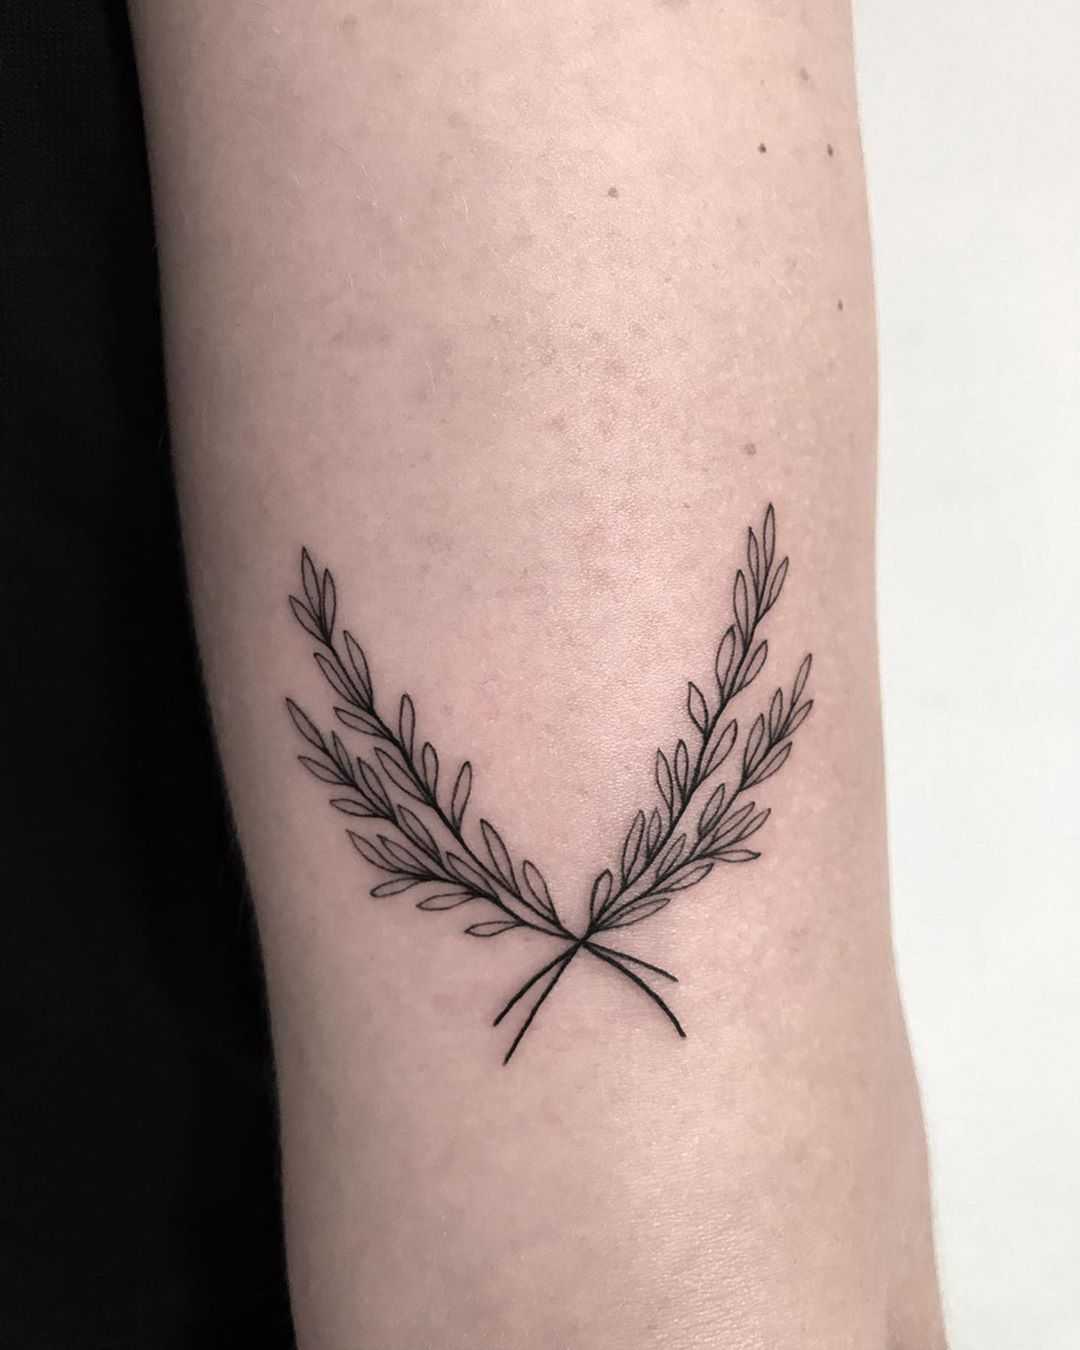 Little twigs by tattooist Spence @zz tattoo